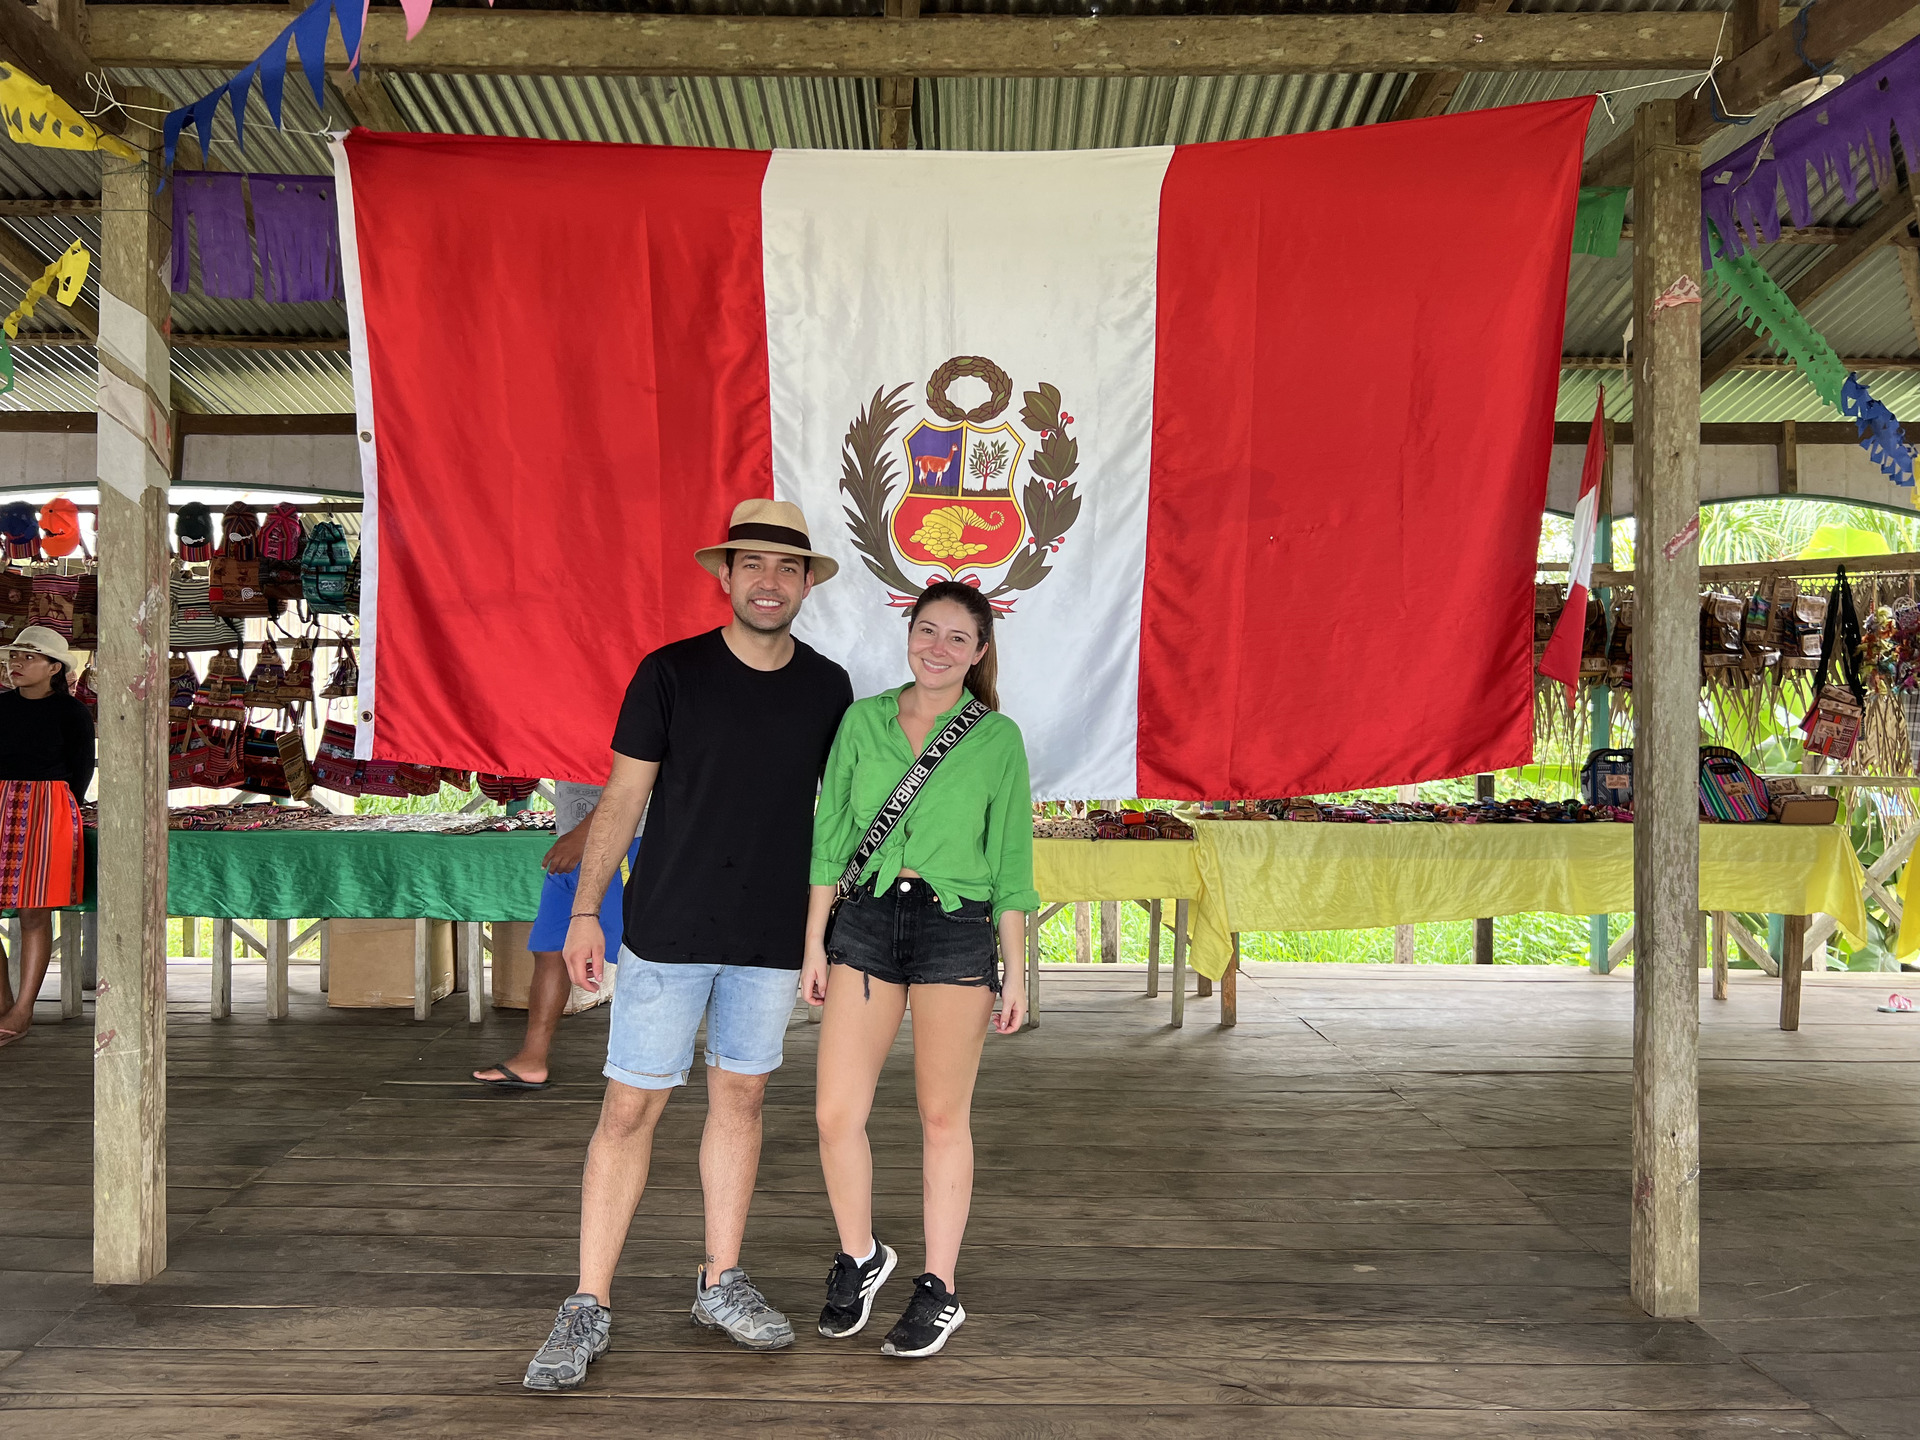 Amazonas Three Borders 3-Day Tour